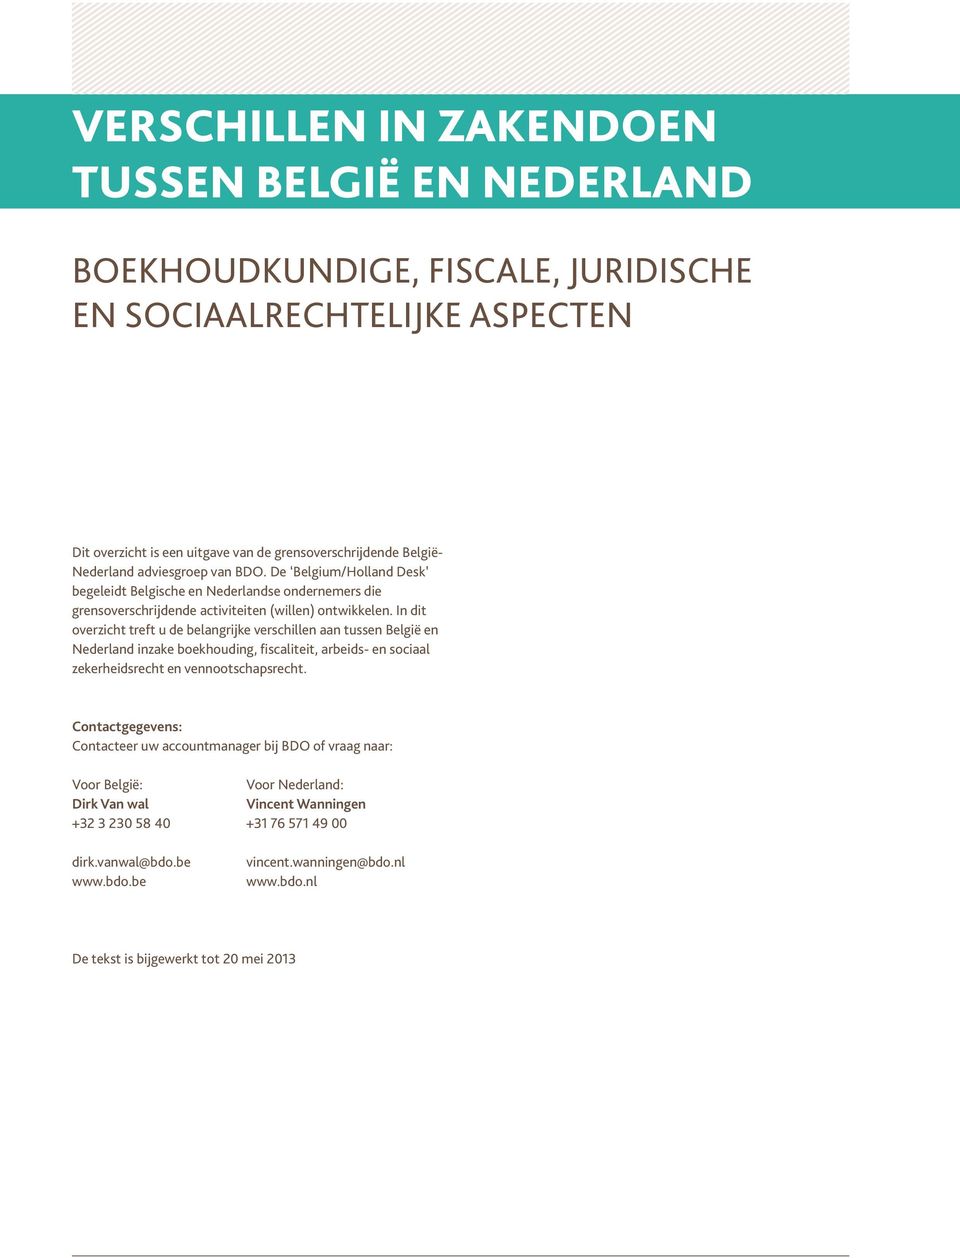 In dit overzicht treft u de belangrijke verschillen aan tussen België en Nederland inzake boekhouding, fiscaliteit, arbeids- en sociaal zekerheidsrecht en vennootschapsrecht.